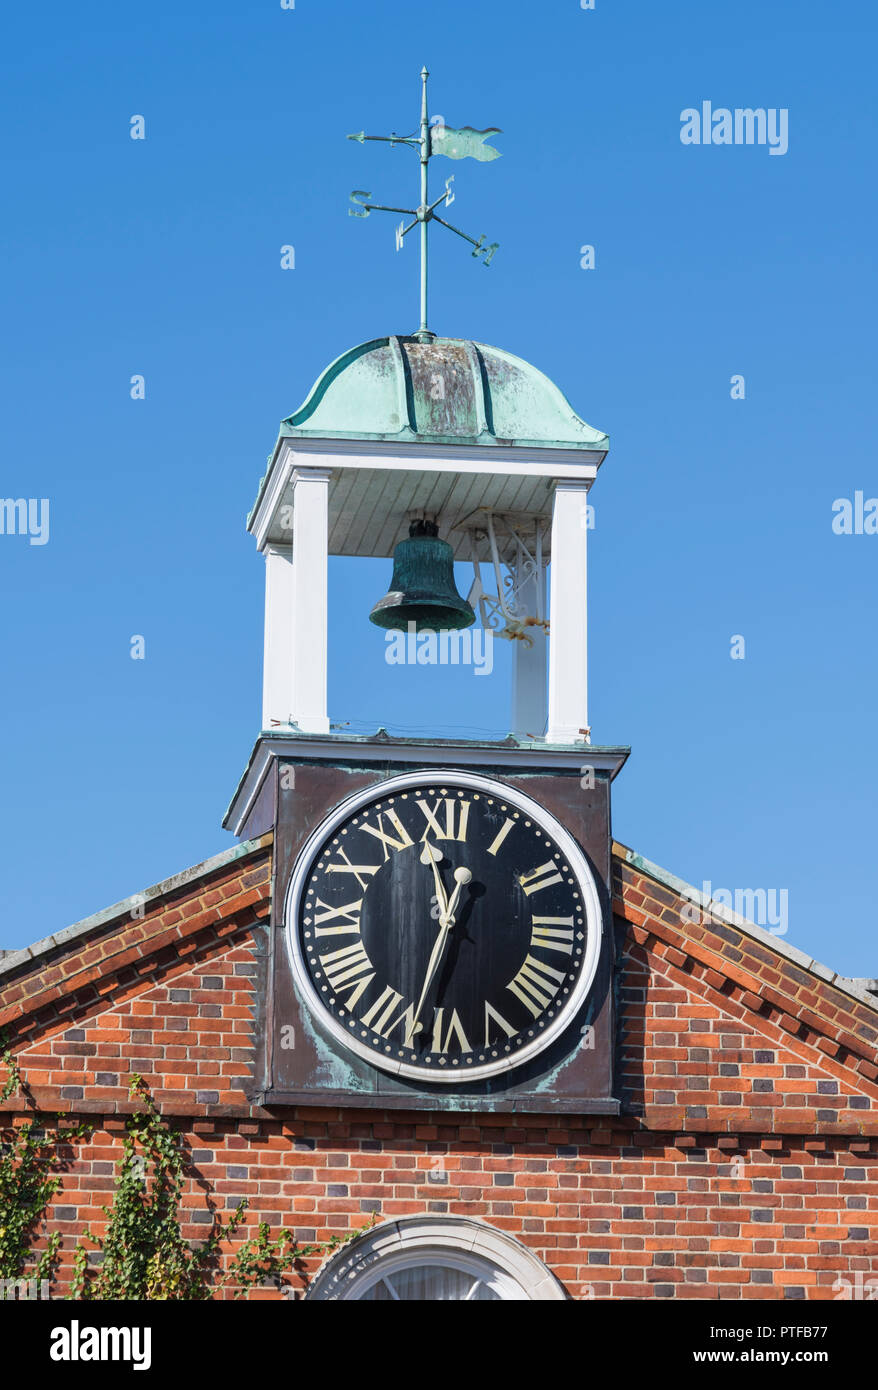 Uhr & Bell aus alten clocktower Gebäude am Gewächshaus Cafe in Gosport, Hampshire, England, UK. Stockfoto